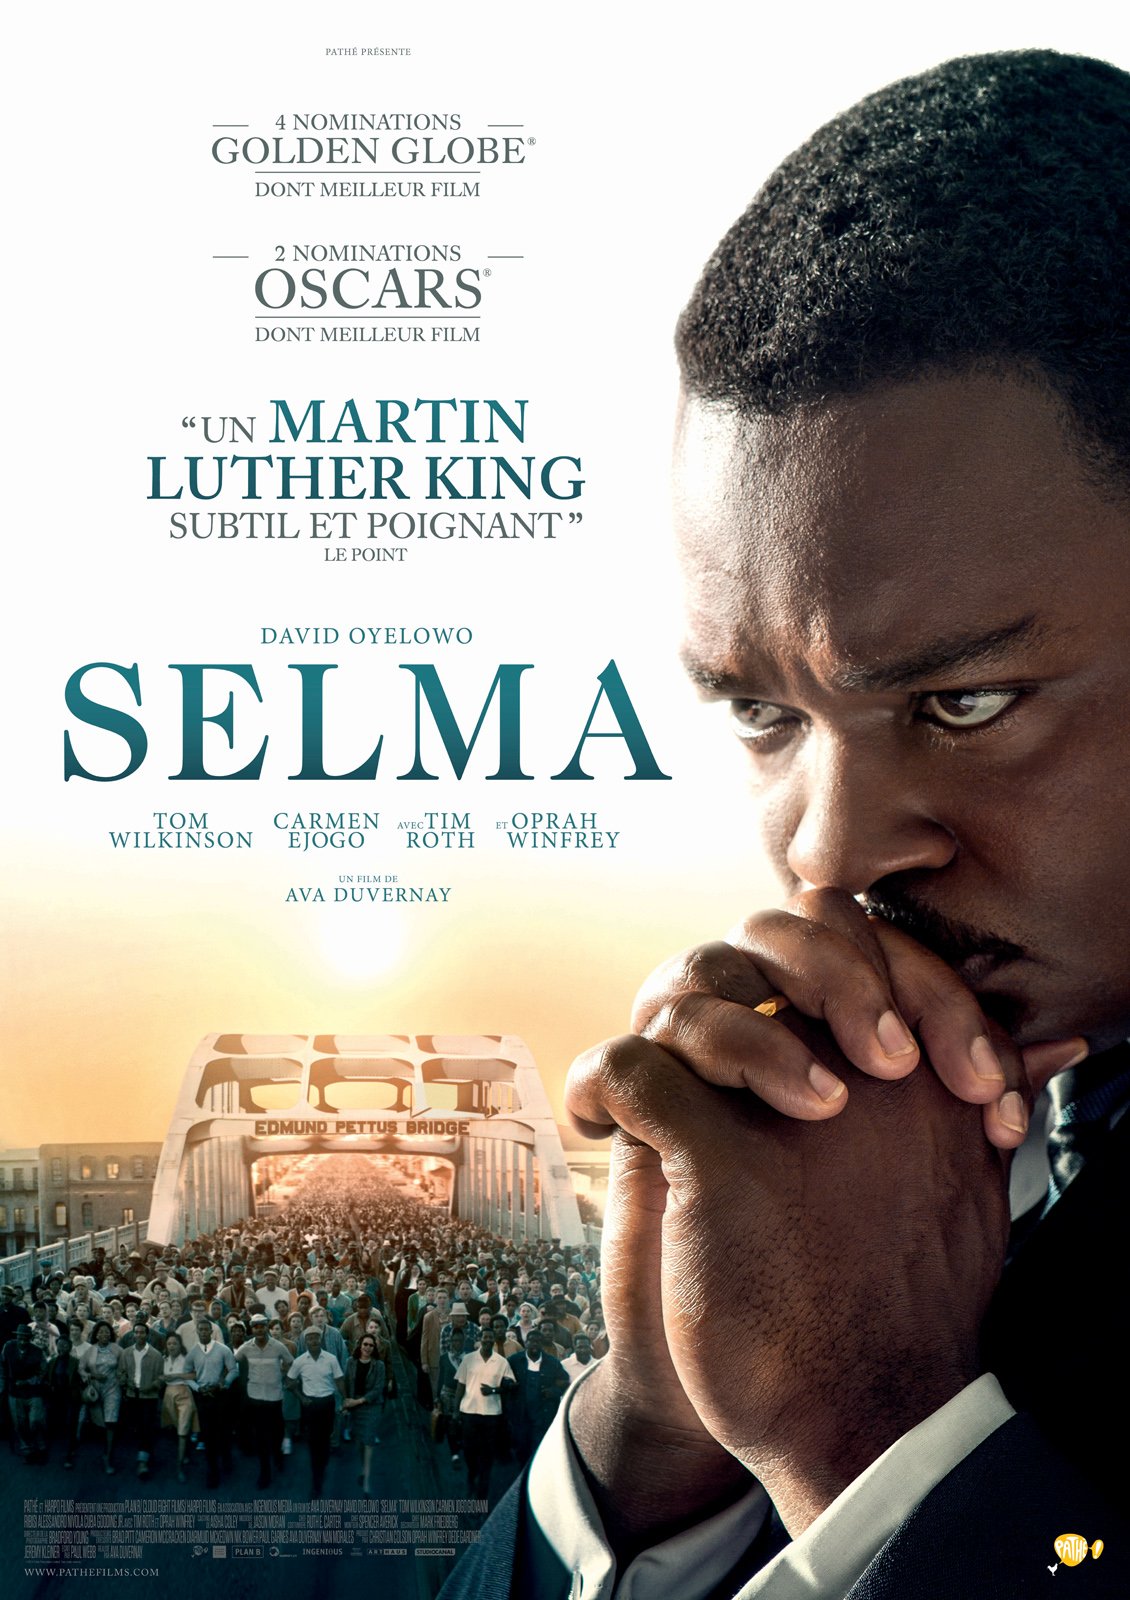 L’affiche du film « Selma », qui retrace la lutte de Martin Luther King. © D’Ava DuVernay